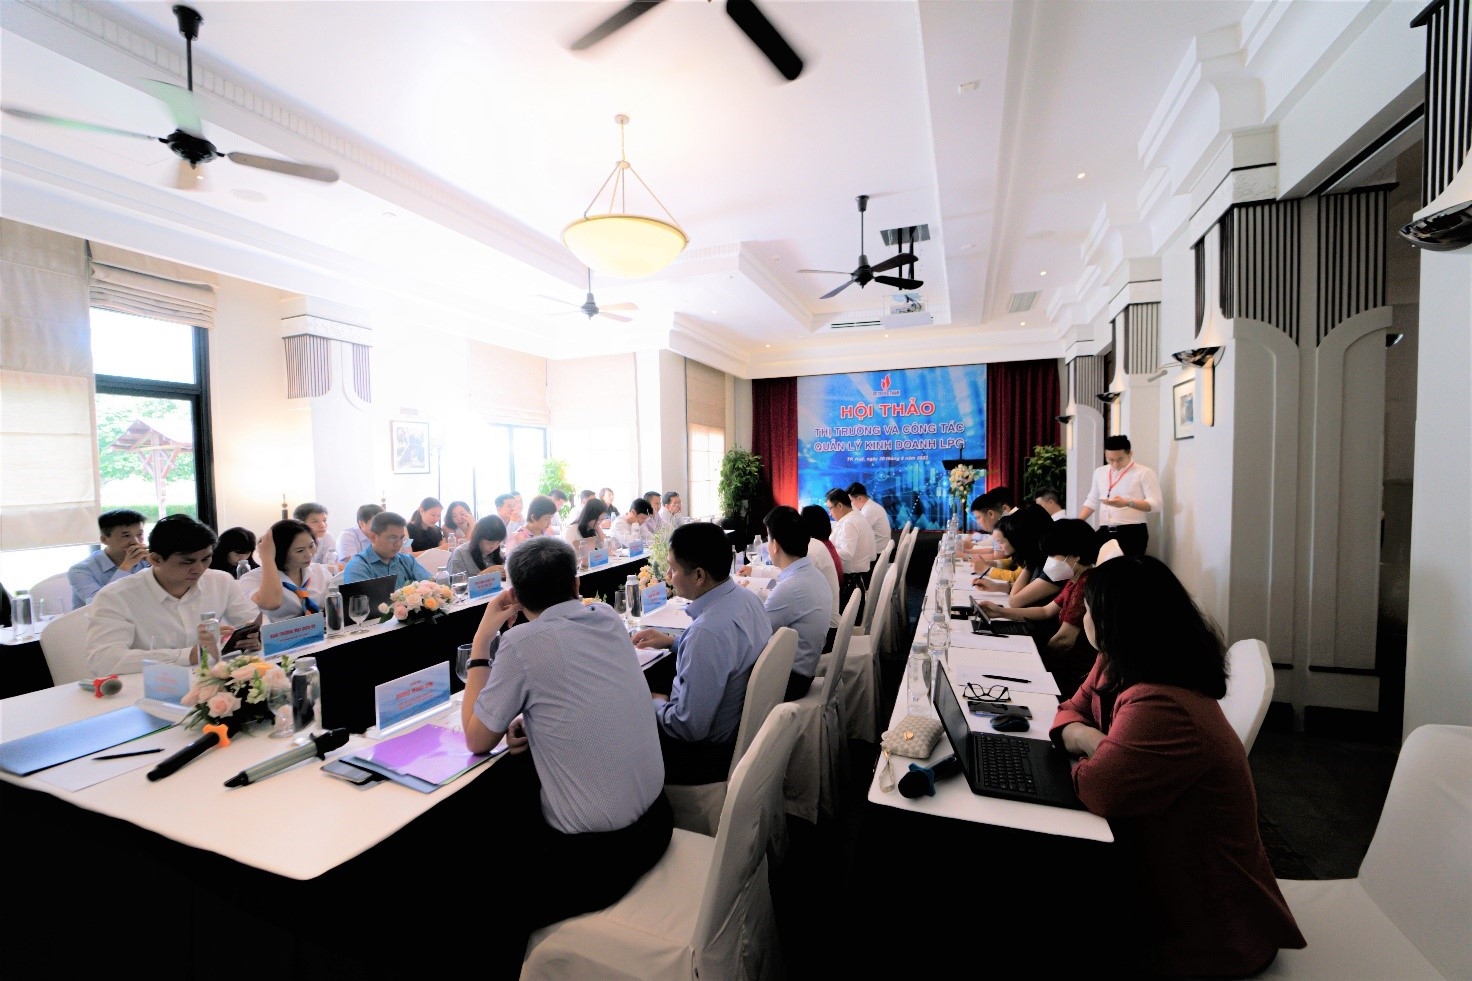 Hội thảo có sự tham dự của Lãnh đạo và các Ban chuyên môn của Tập đoàn Dầu khí Việt Nam, Tổng Công ty Khí Việt Nam và Công ty Cổ phần Lọc hóa dầu Bình Sơn